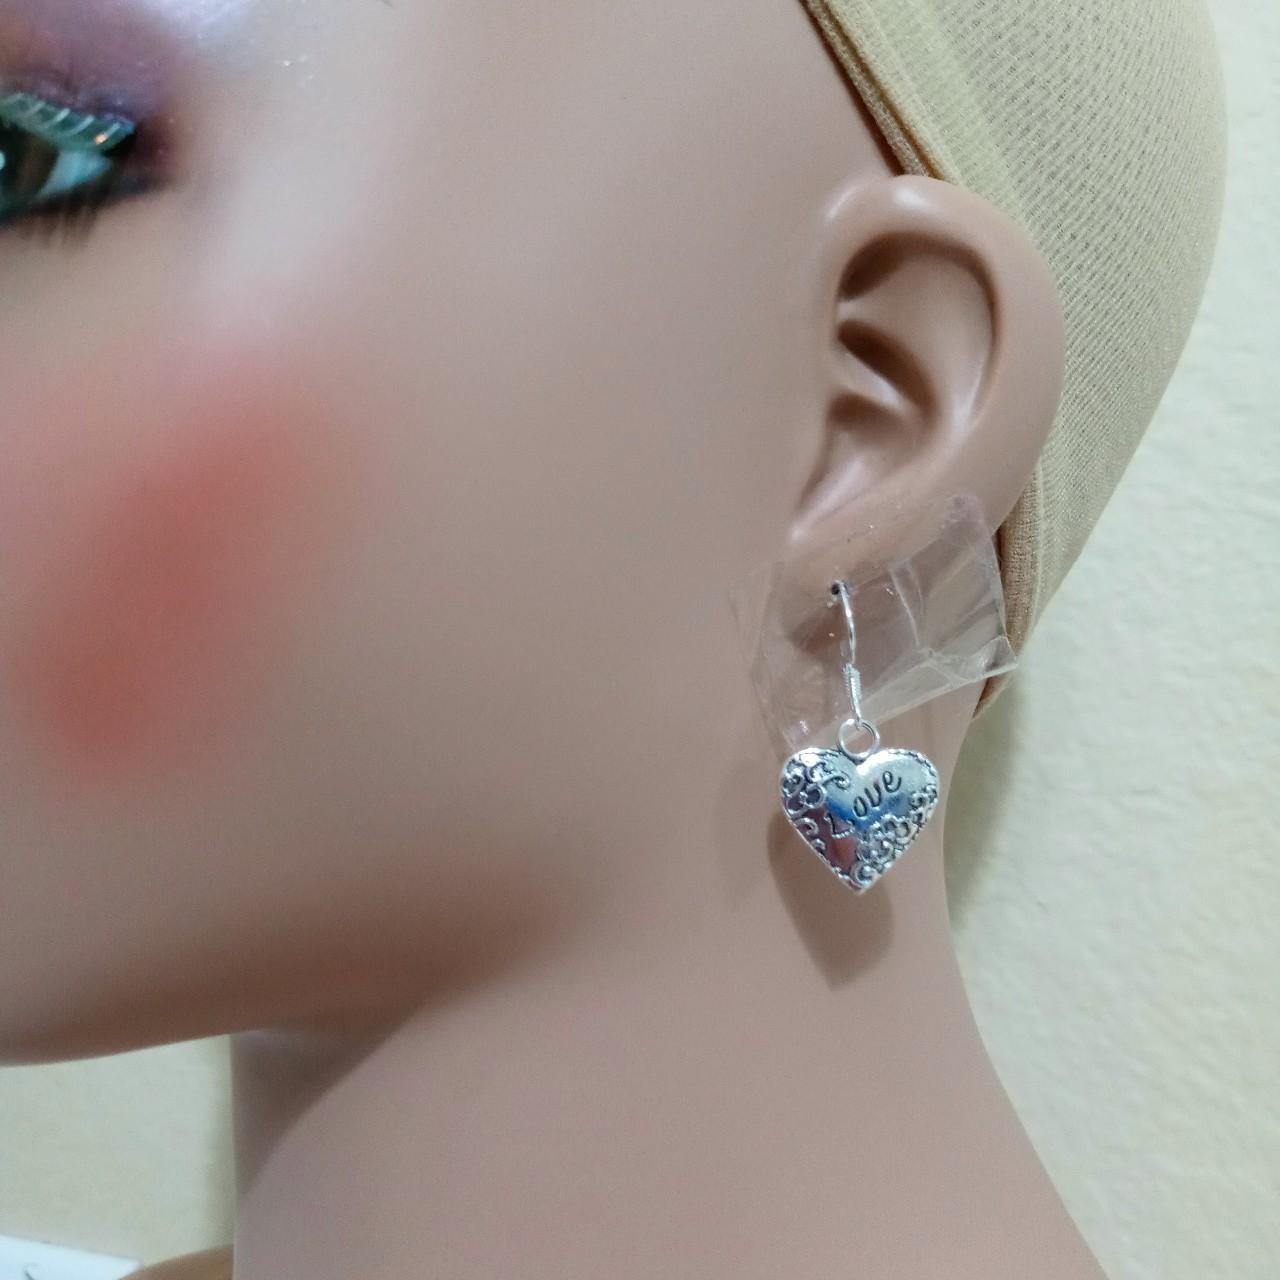 Lv heart earrings - Depop